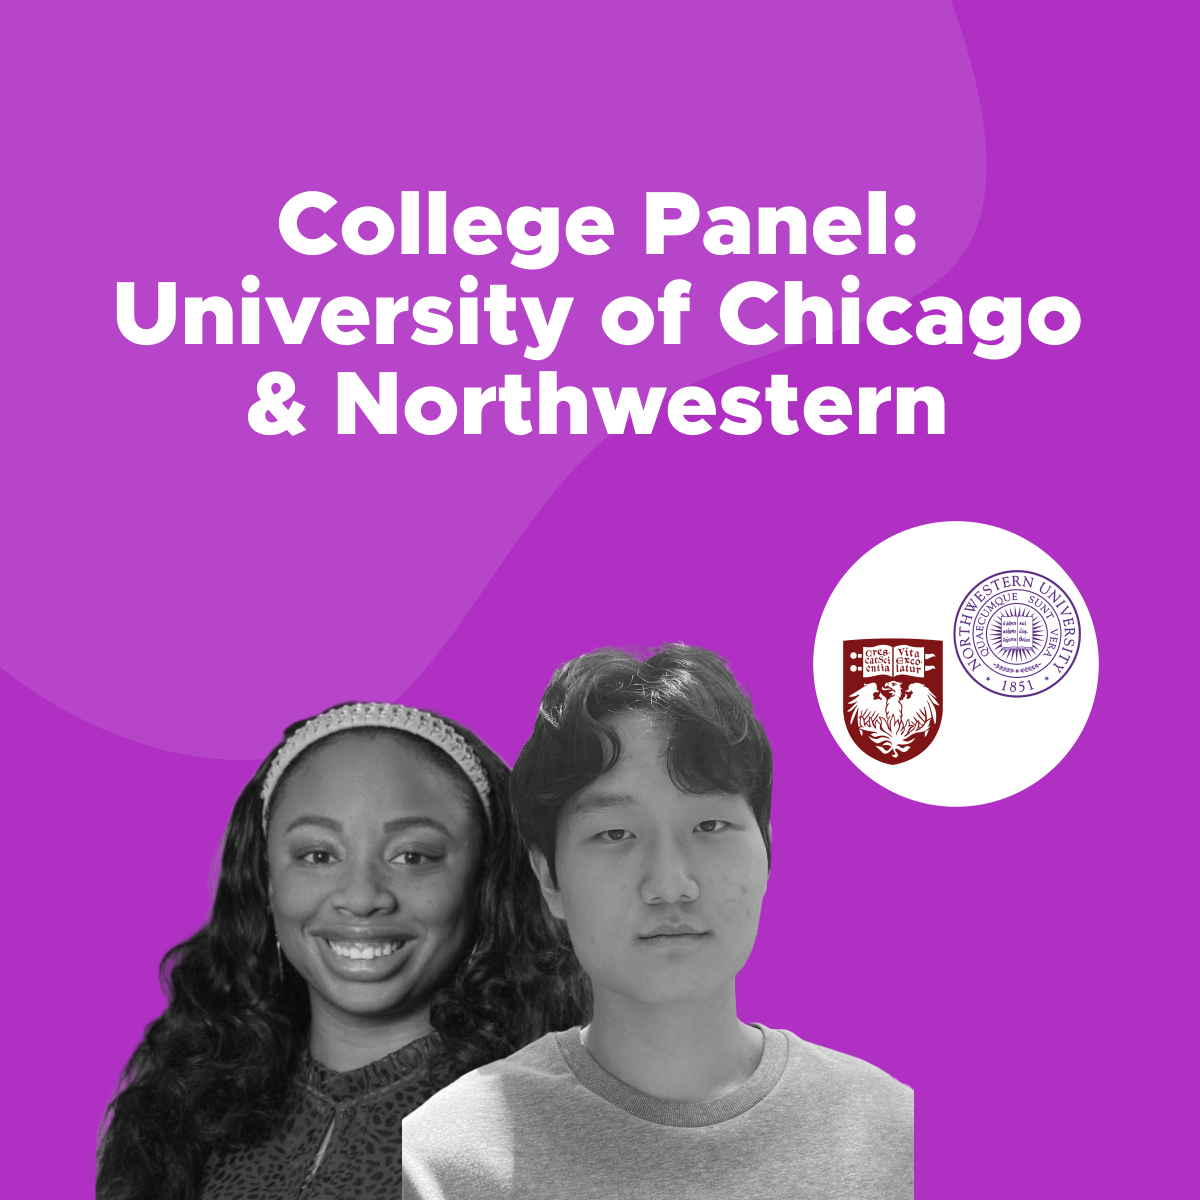 Northwestern University and University of Chicago Panel